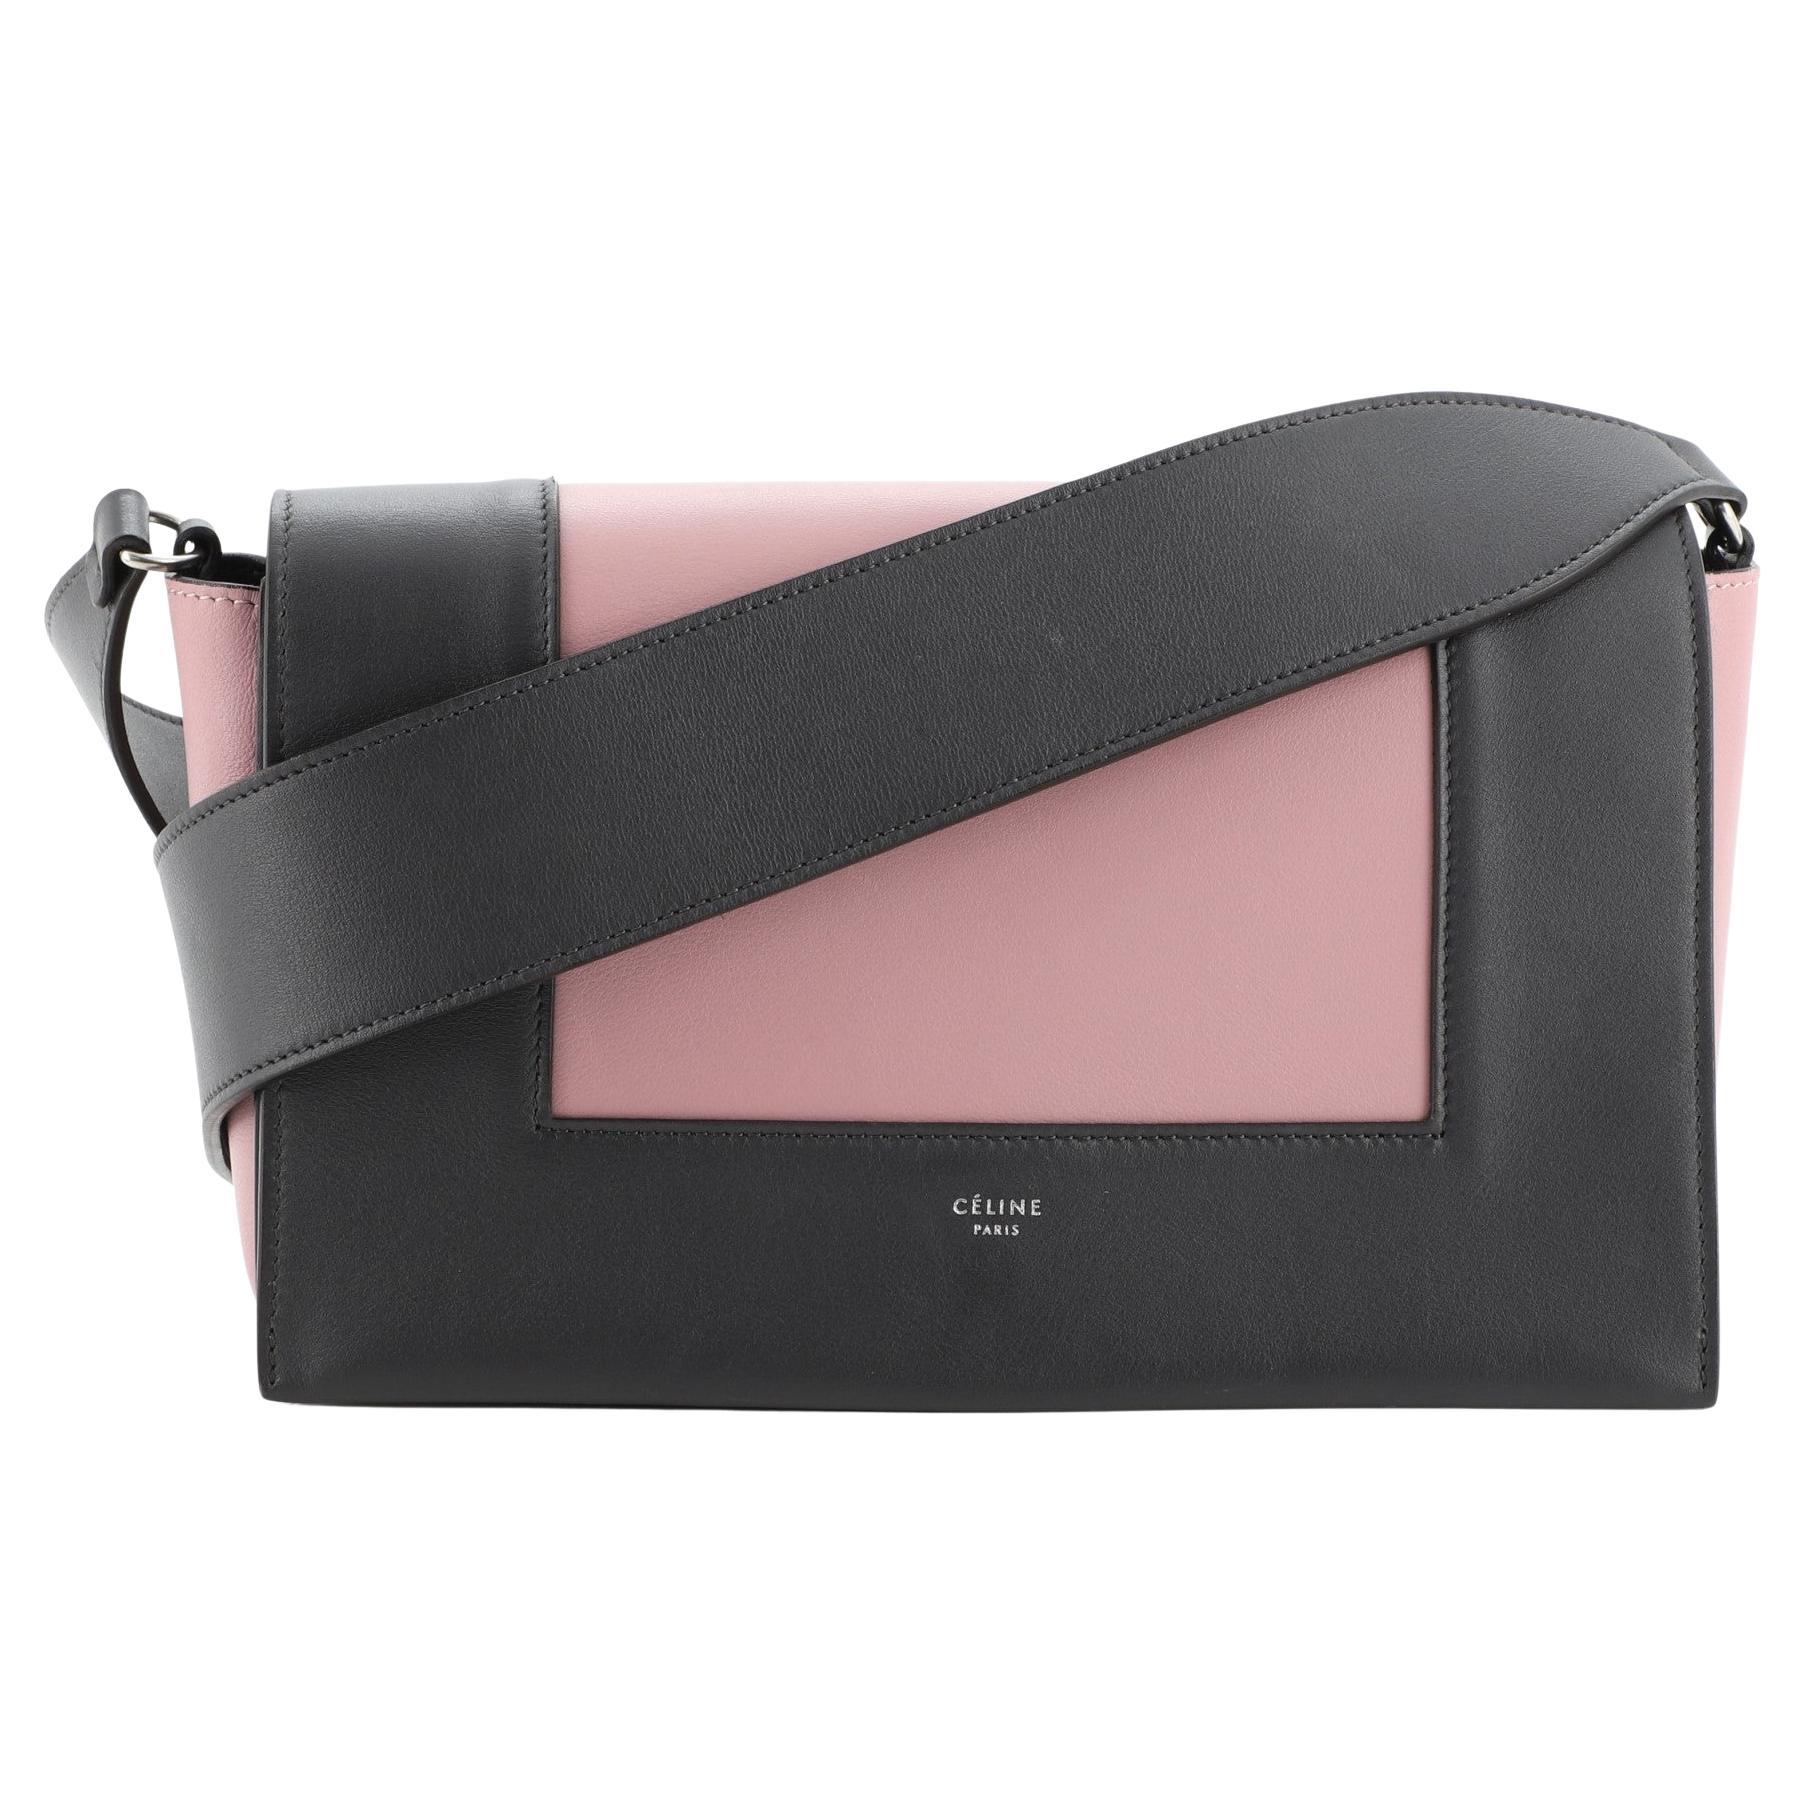  Celine Frame Shoulder Bag Leather Medium